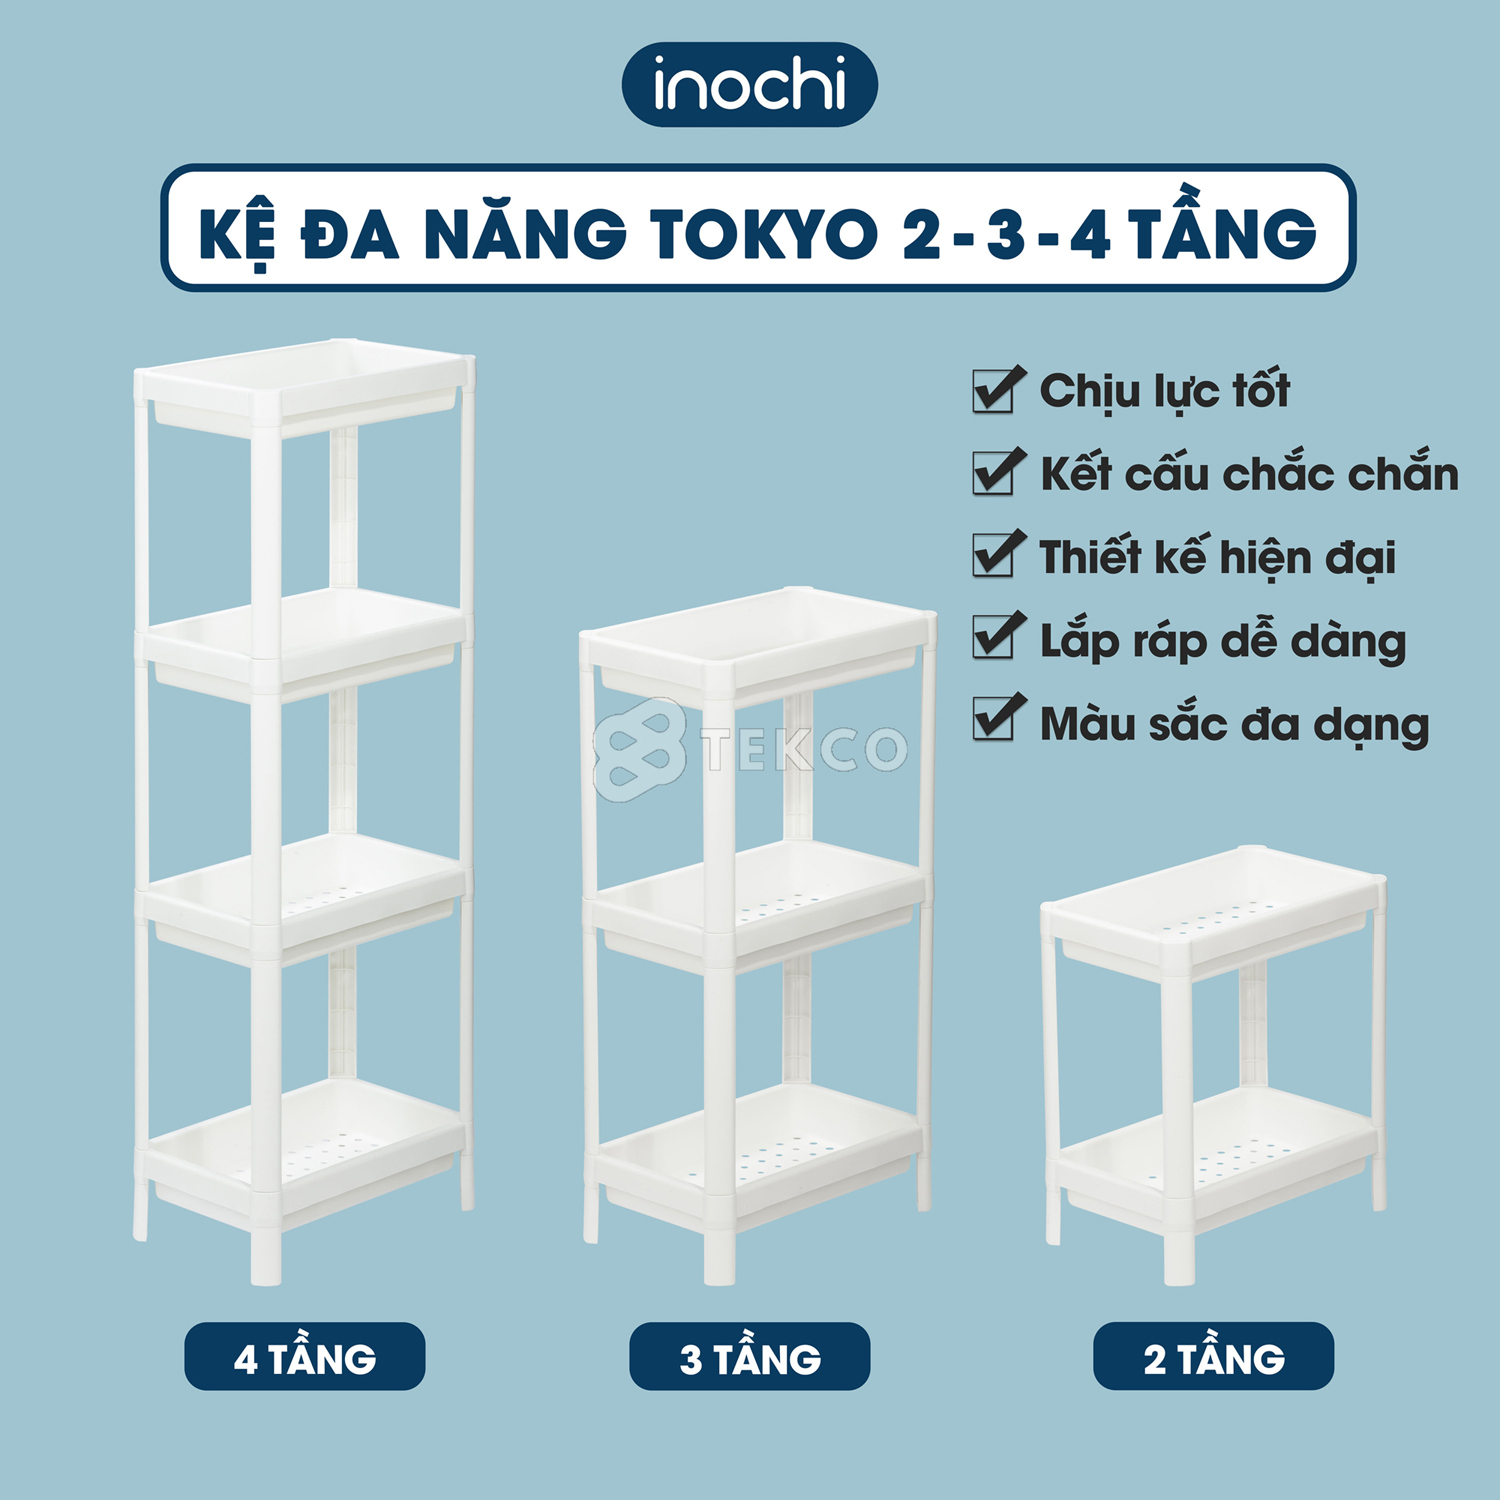 Kệ nhựa đựng đồ nhà tắm, nhà bếp Tokyo INOCHI 2-3-4 tầng - Giá để chén bát, gia vị, sữa tắm,...đa năng